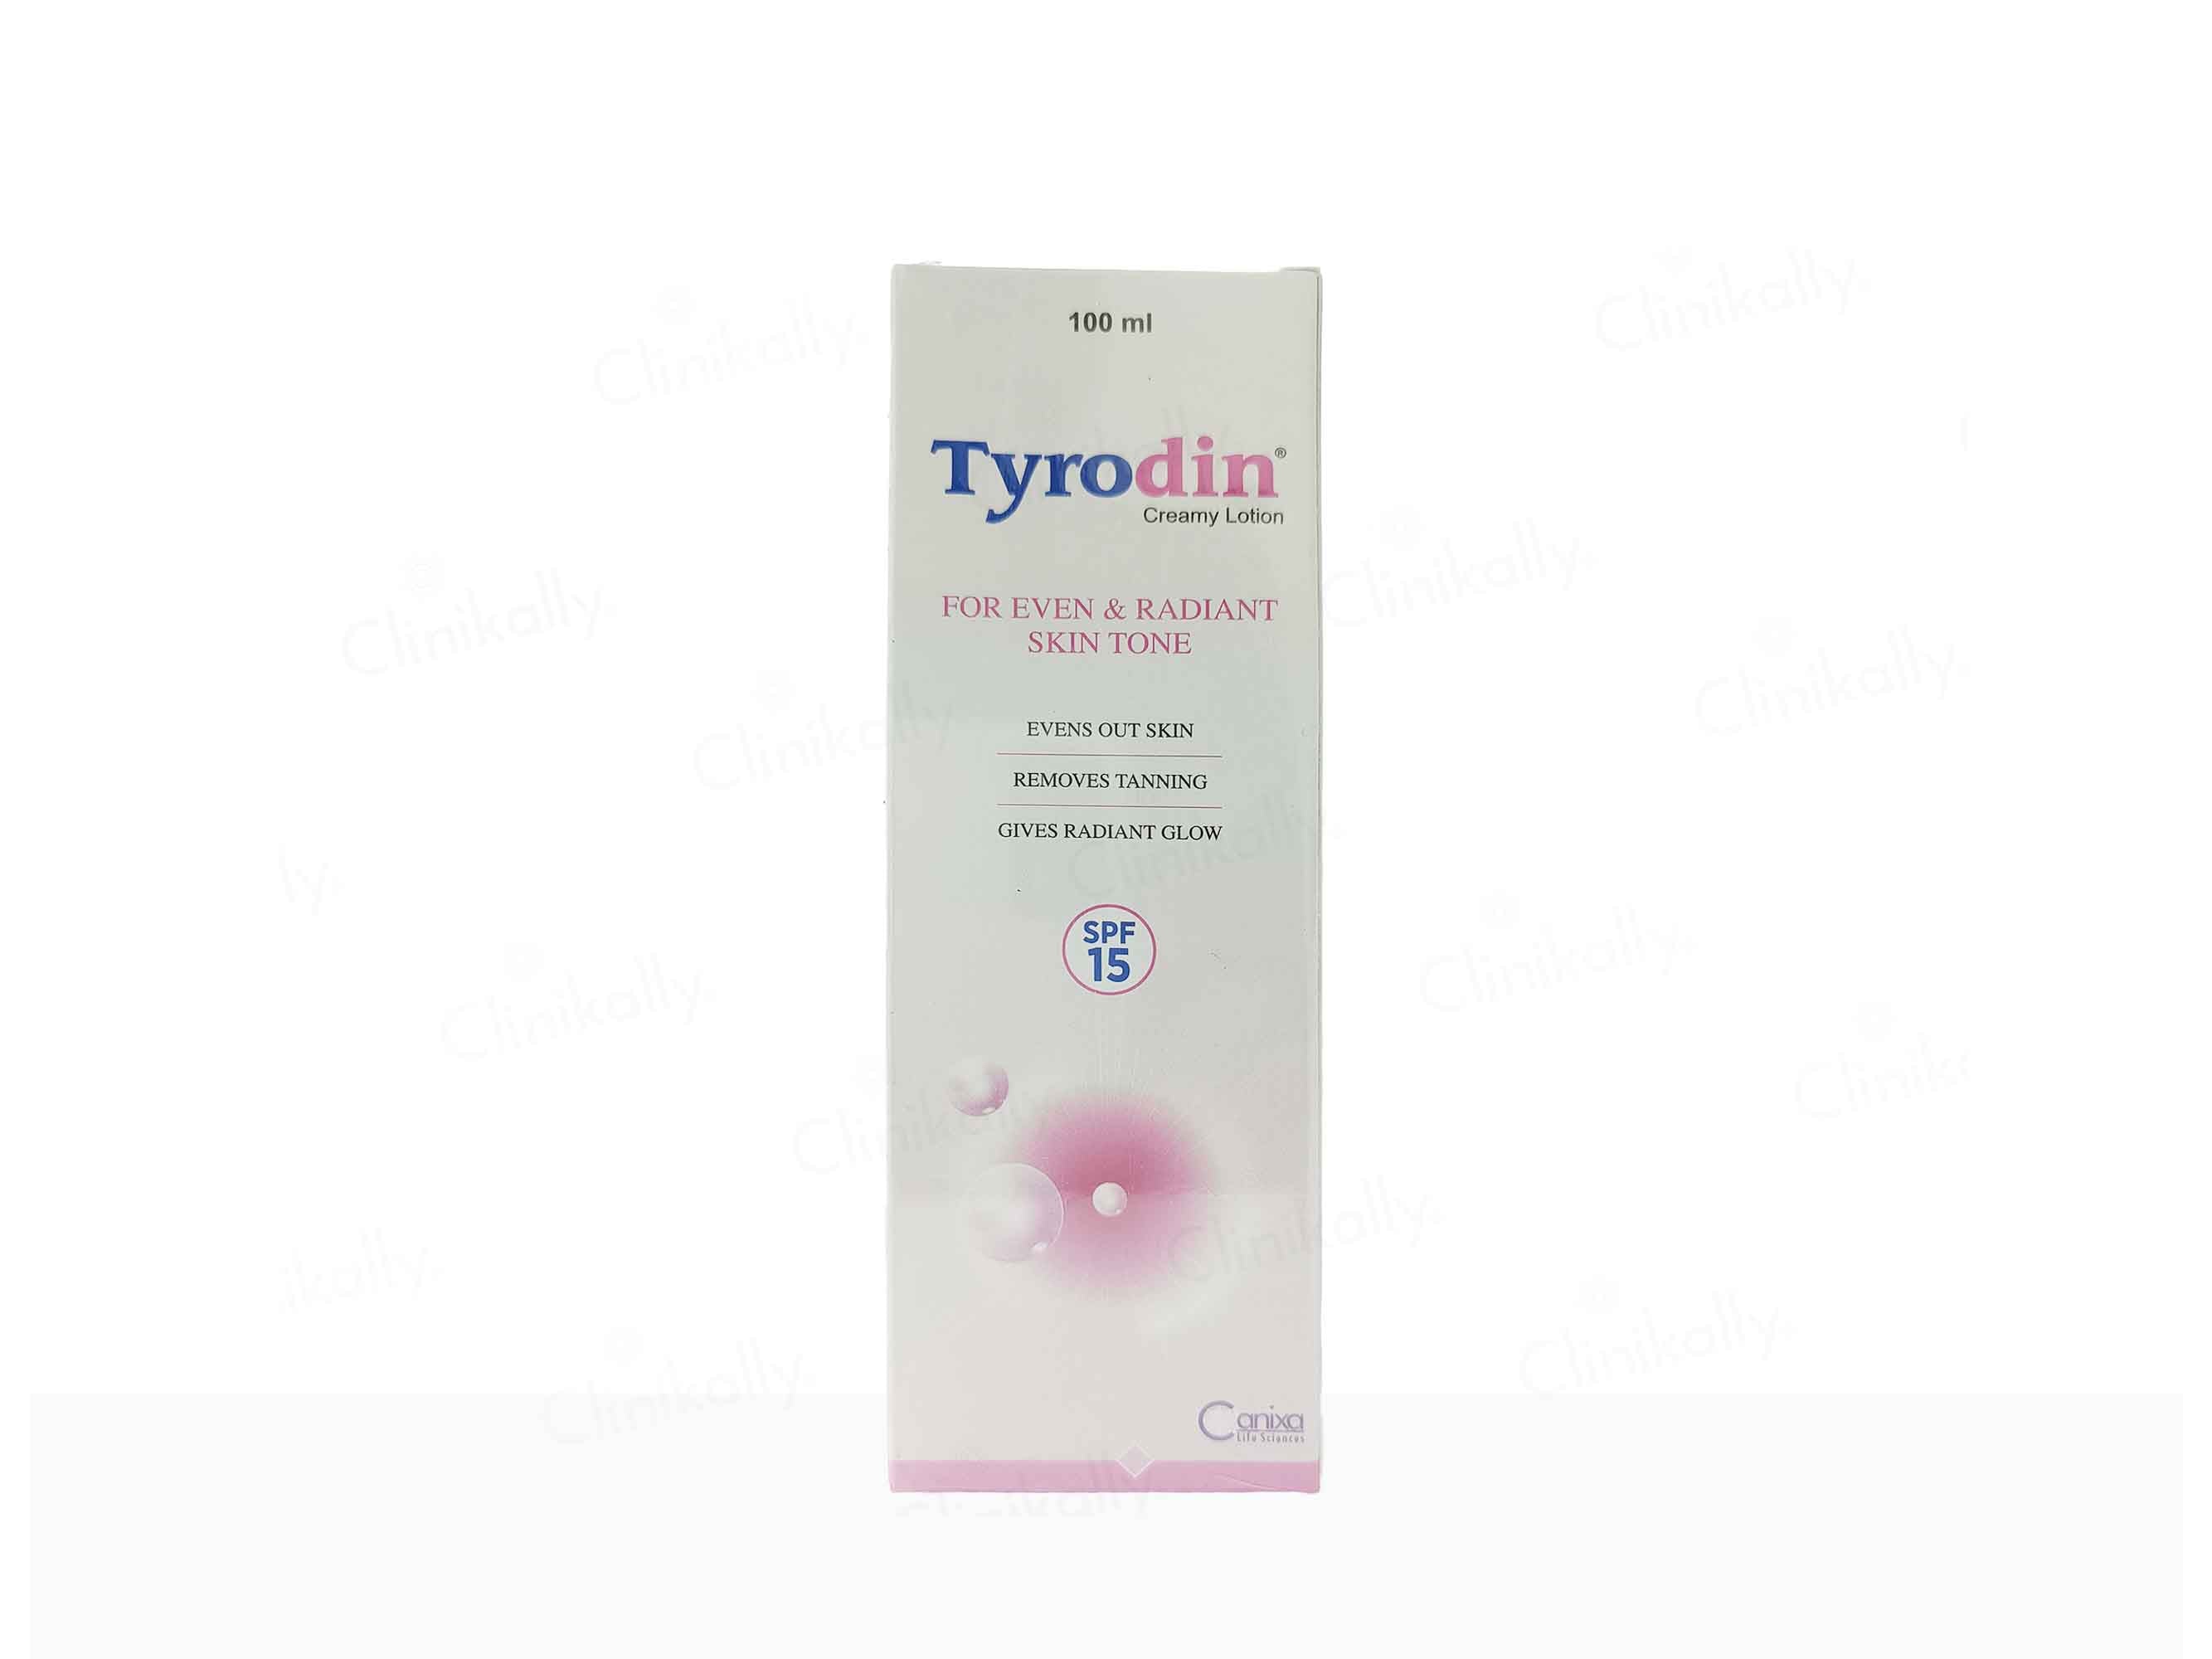 Tyrodin Creamy Lotion SPF 15 - Clinikally